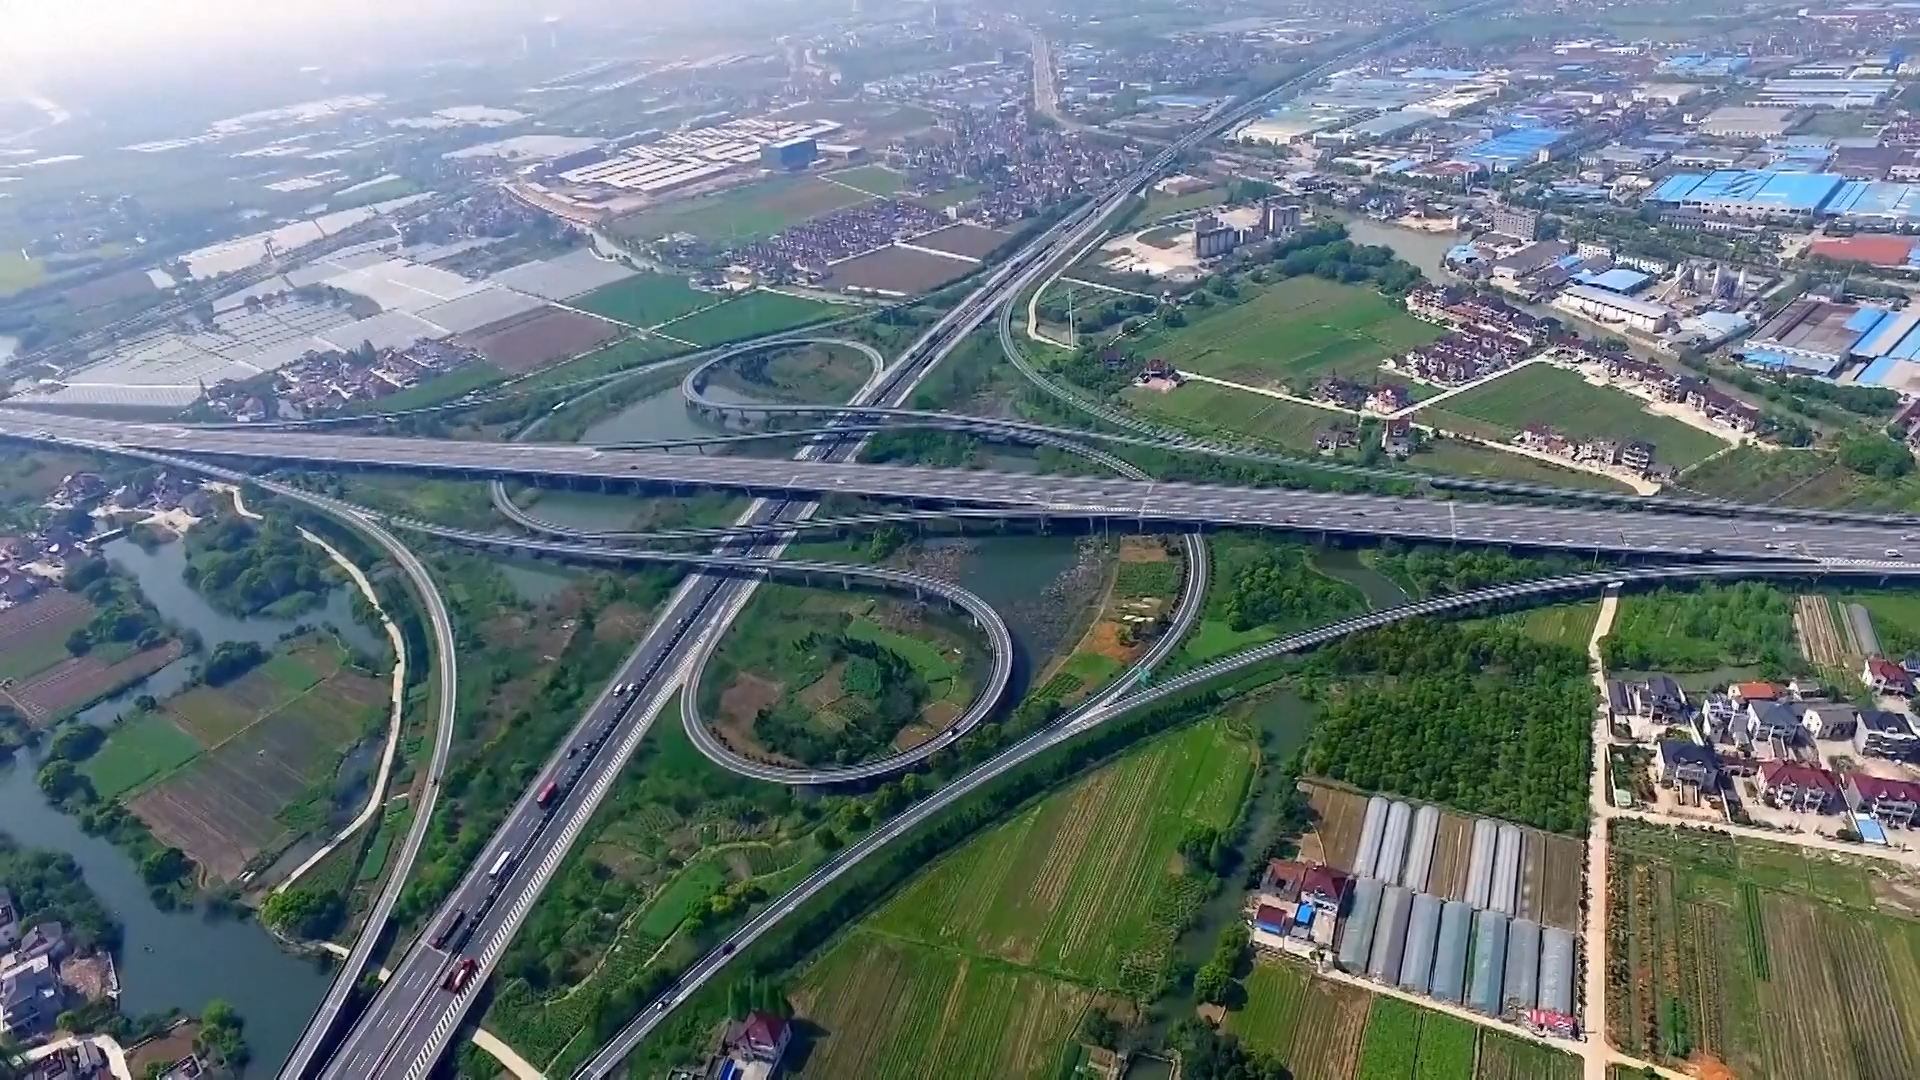  Chiny zbudowały największą na świecie sieć kolei dużych prędkości i sieć autostrad